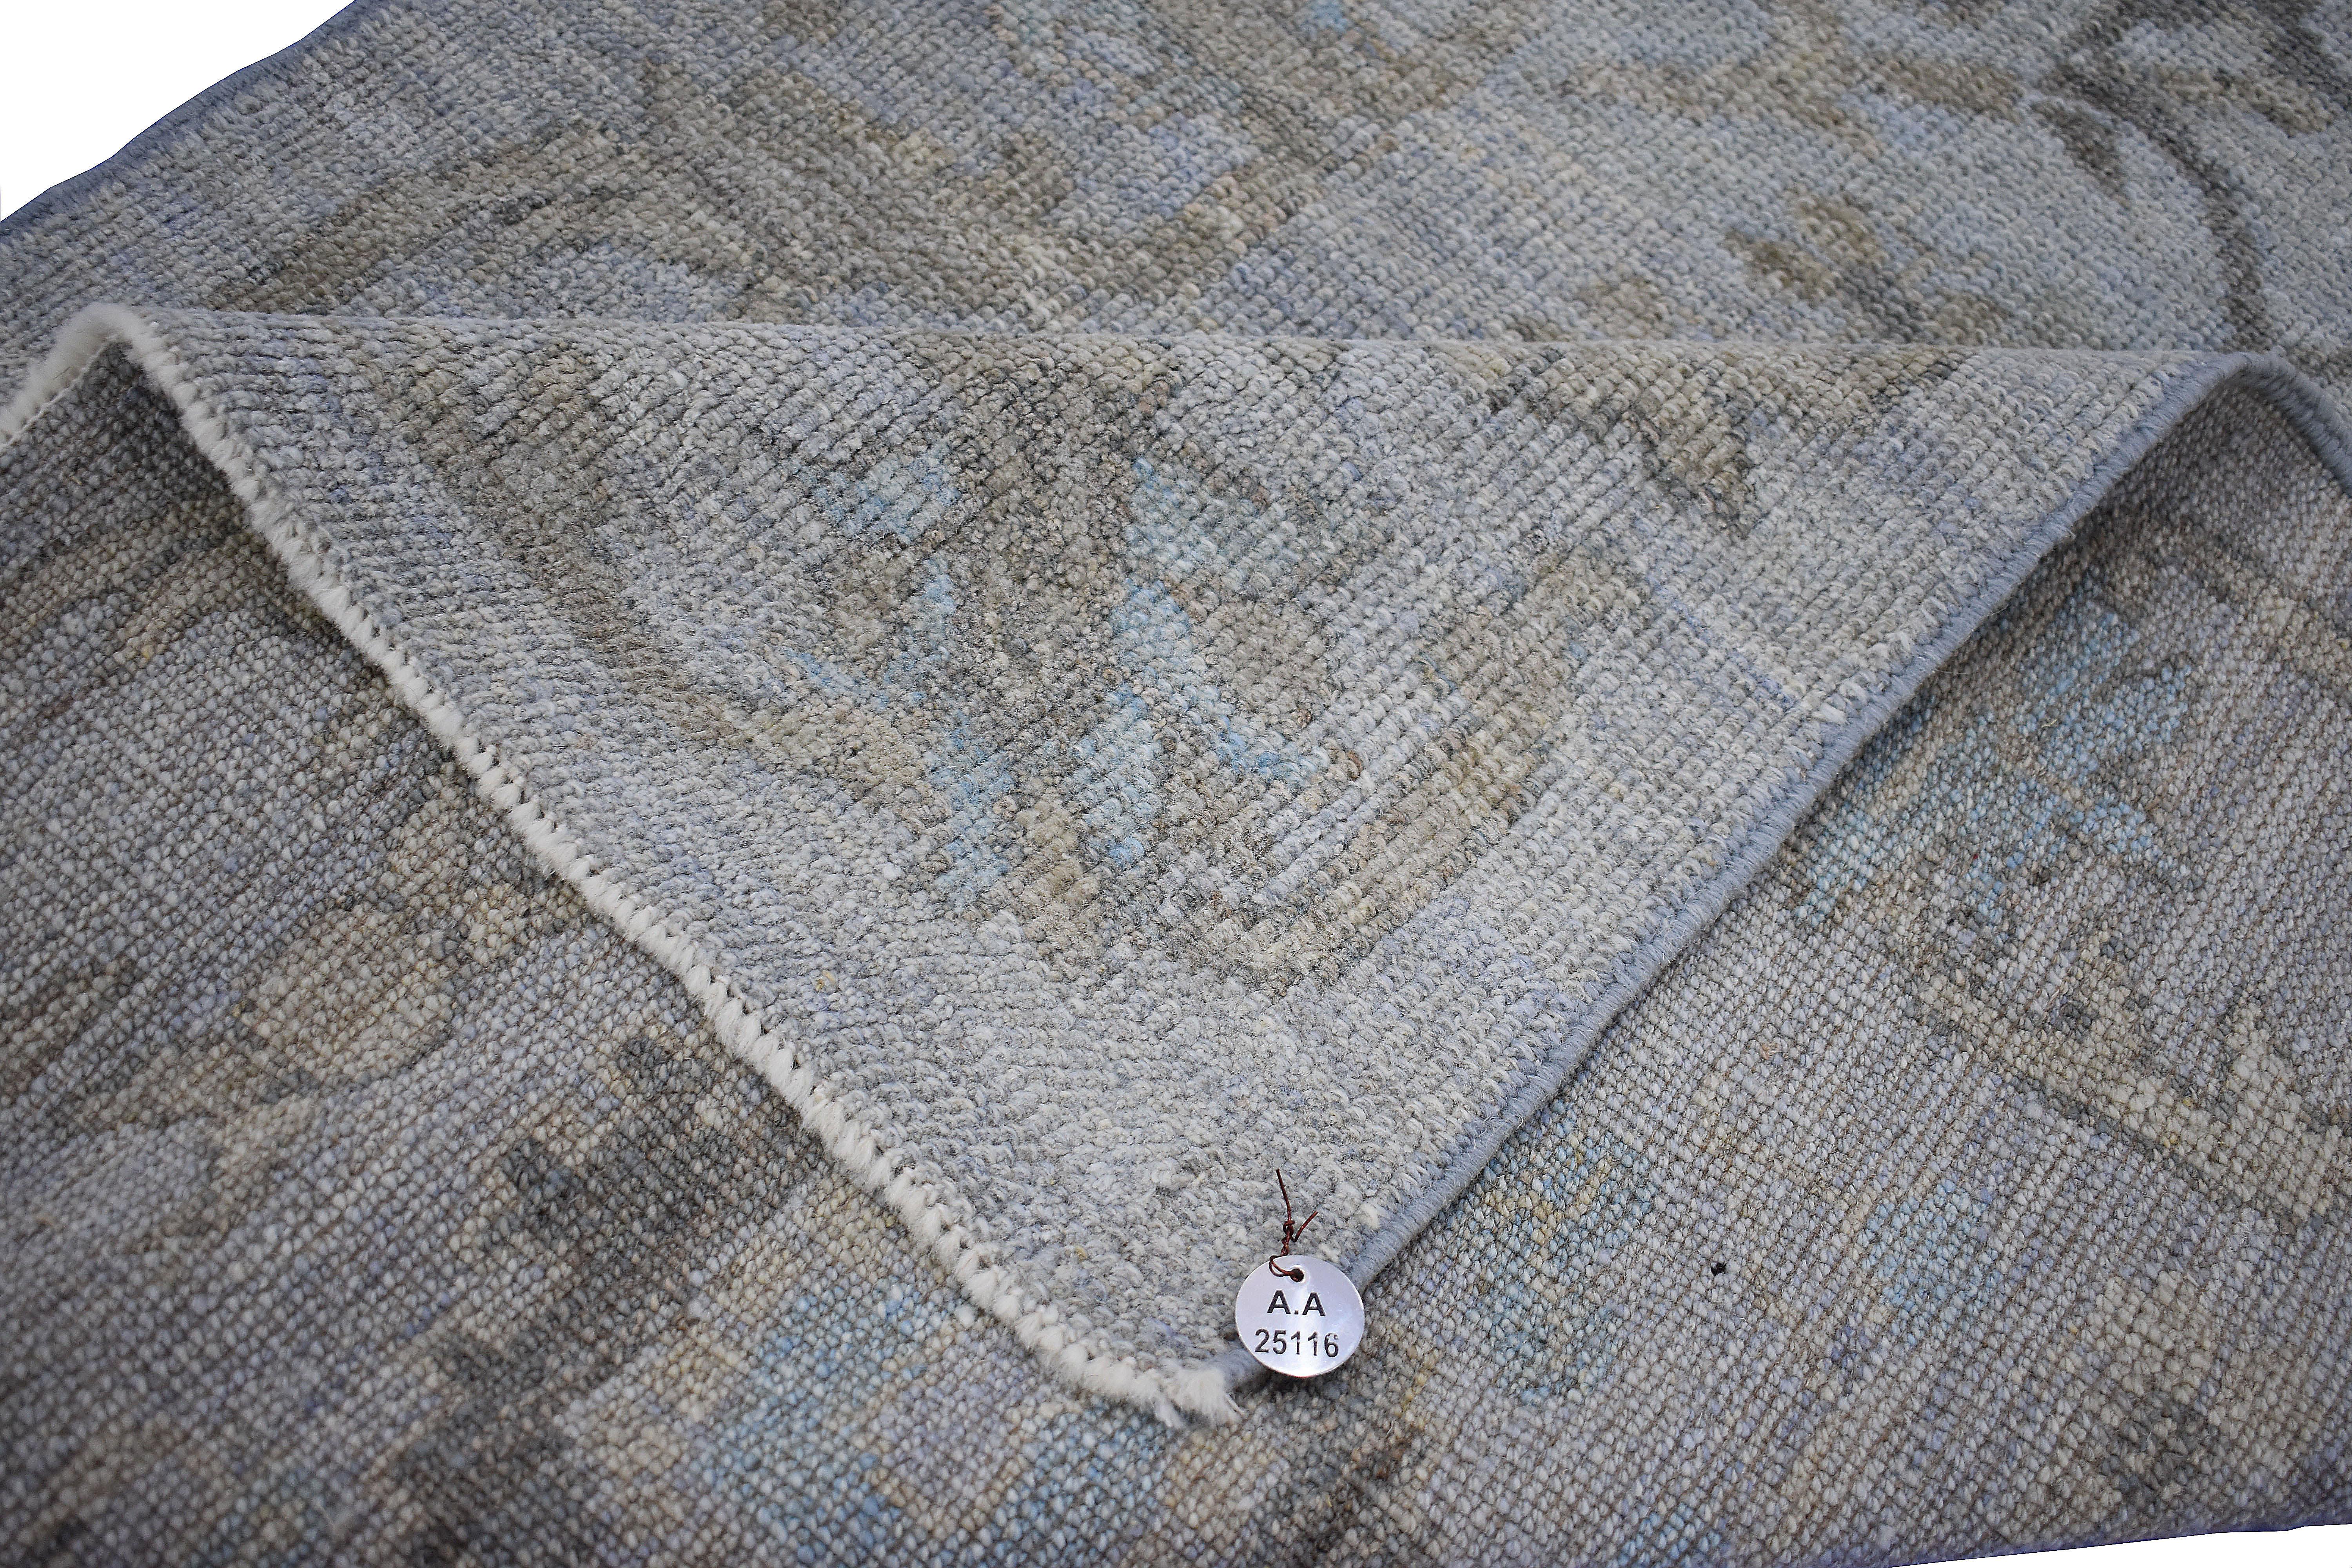 Moderner türkischer Teppich aus handgewebter Schafwolle von höchster Qualität. Es ist mit organischen Pflanzenfarben gefärbt, die für Menschen und Haustiere gleichermaßen als sicher zertifiziert sind. Es zeigt ein grau-violettes Feld mit floralen